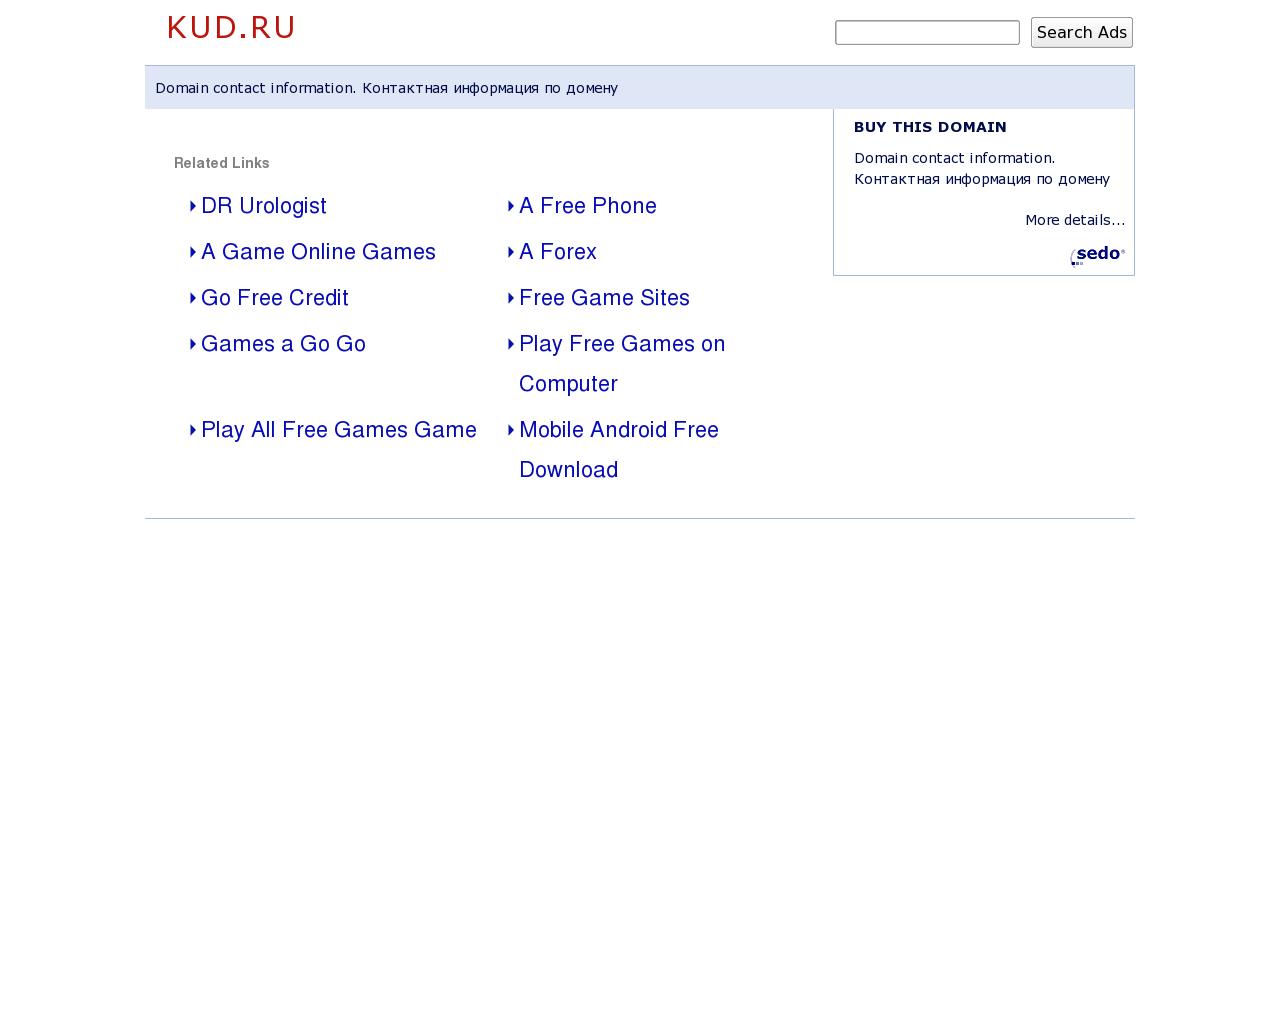 Изображение сайта kud.ru в разрешении 1280x1024